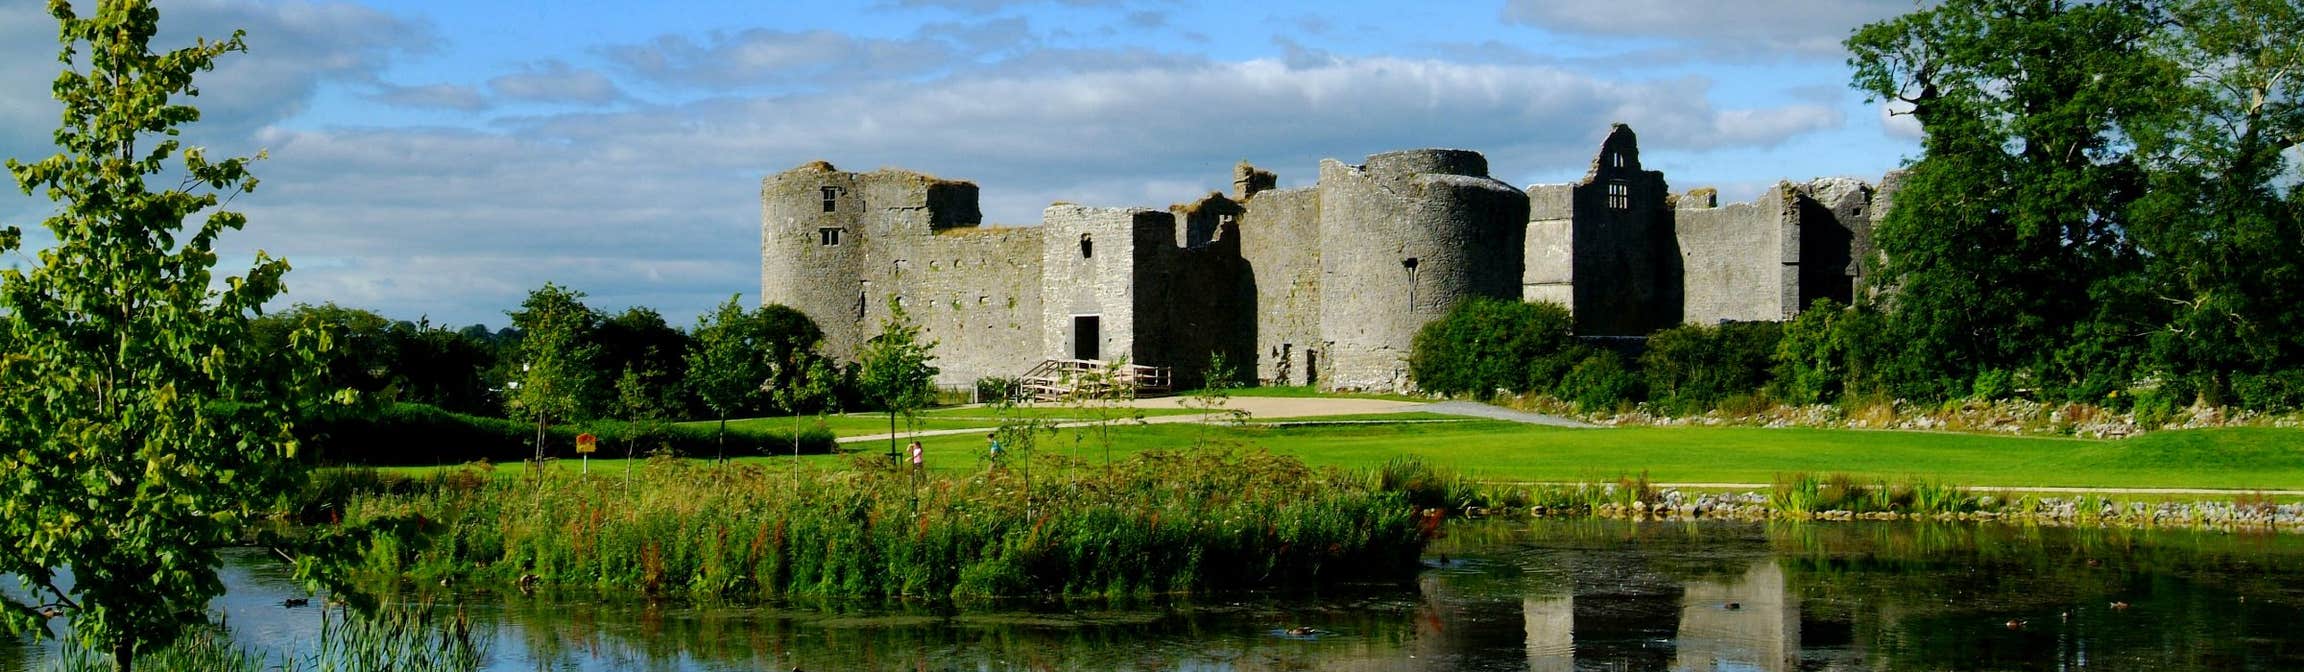 Roscommon Castle, County Roscommon